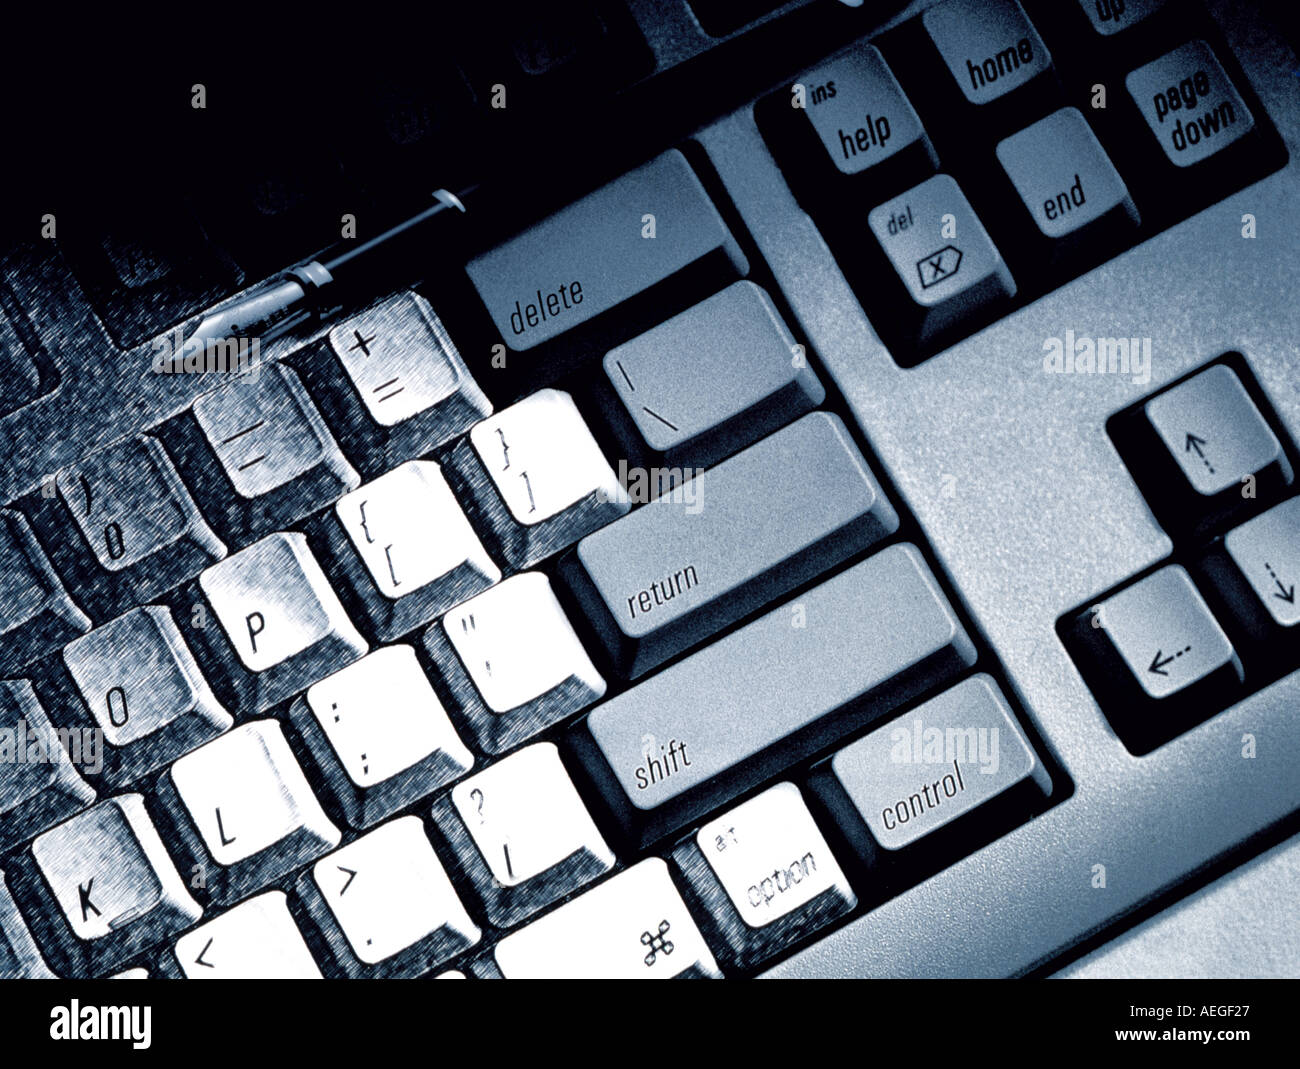 Office bianco nero b w i tasti della tastiera con la tecnologia di input computer varie texture di sfondo Foto Stock